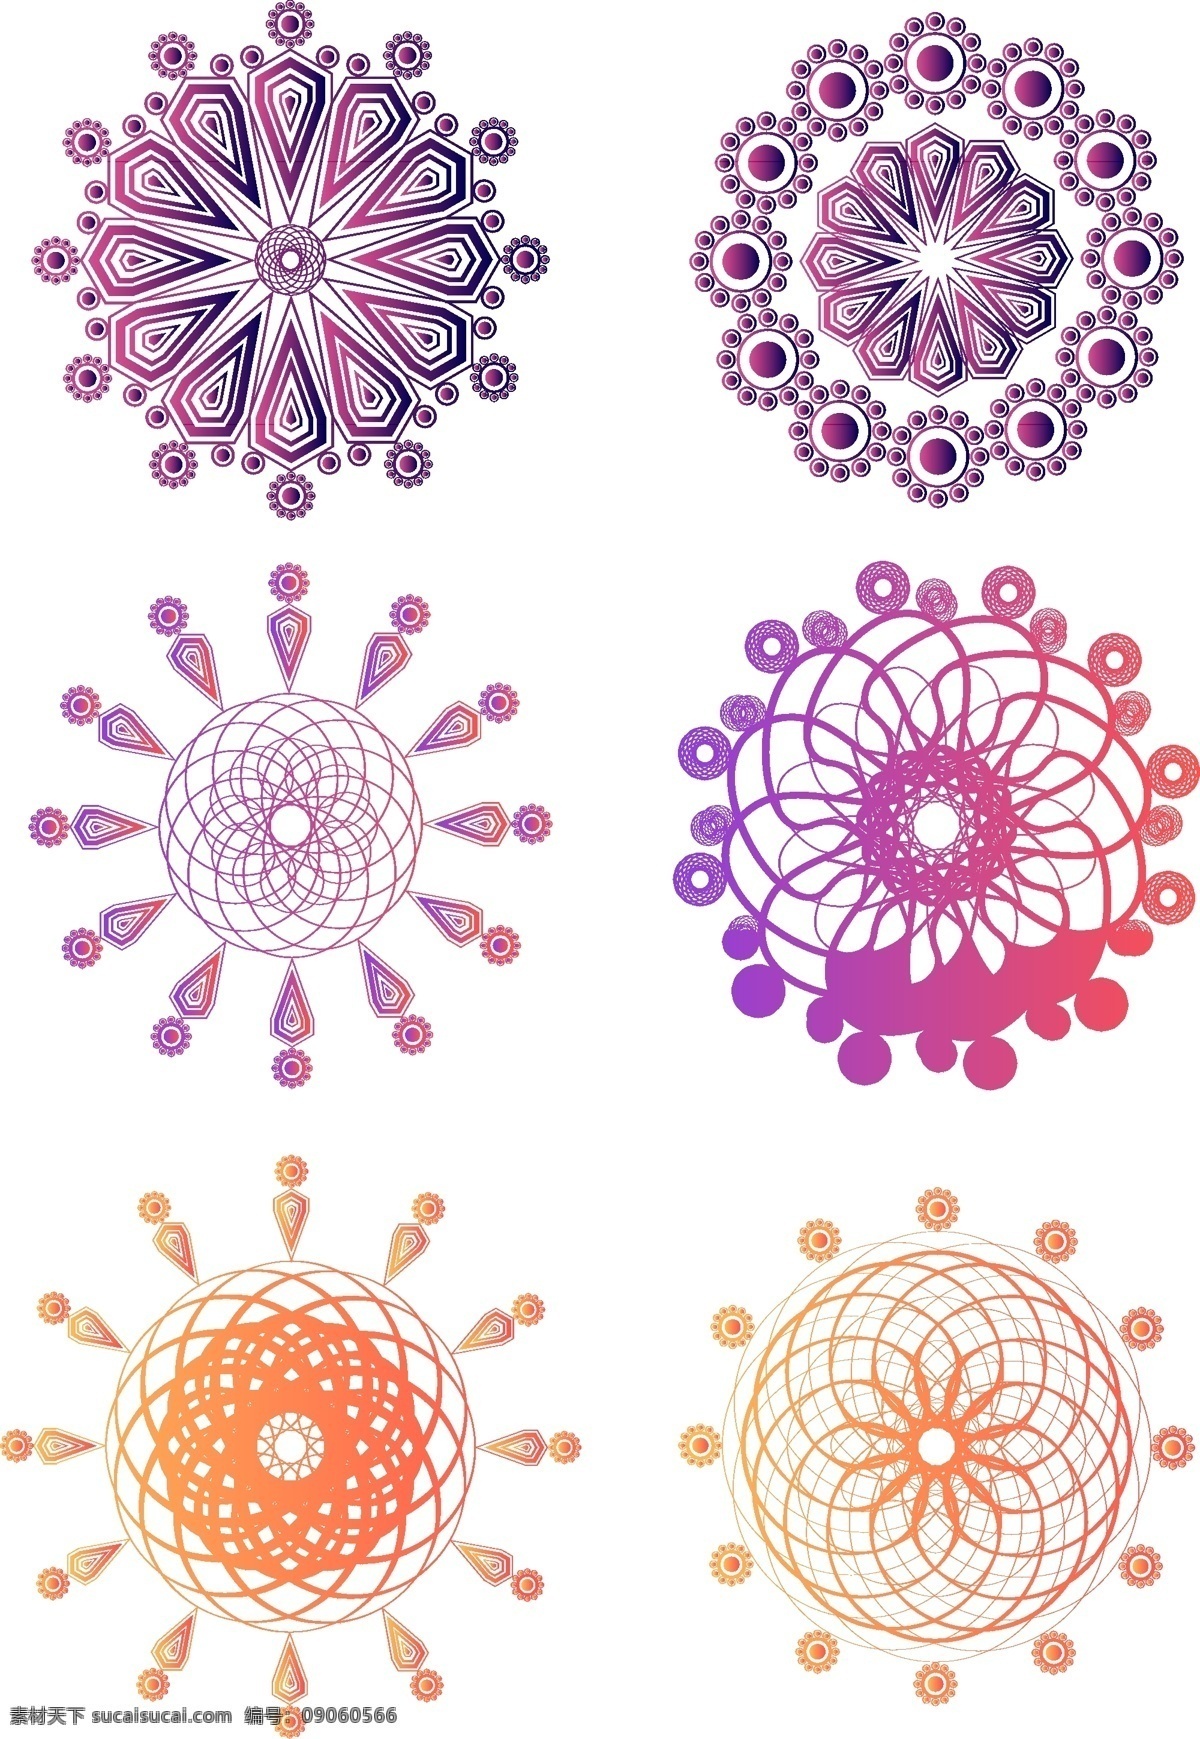 原创 矢量 几何 万花筒 旋转 渐变 元素 设计元素 装饰 花纹 可商用 珊瑚橘 锦鲤红